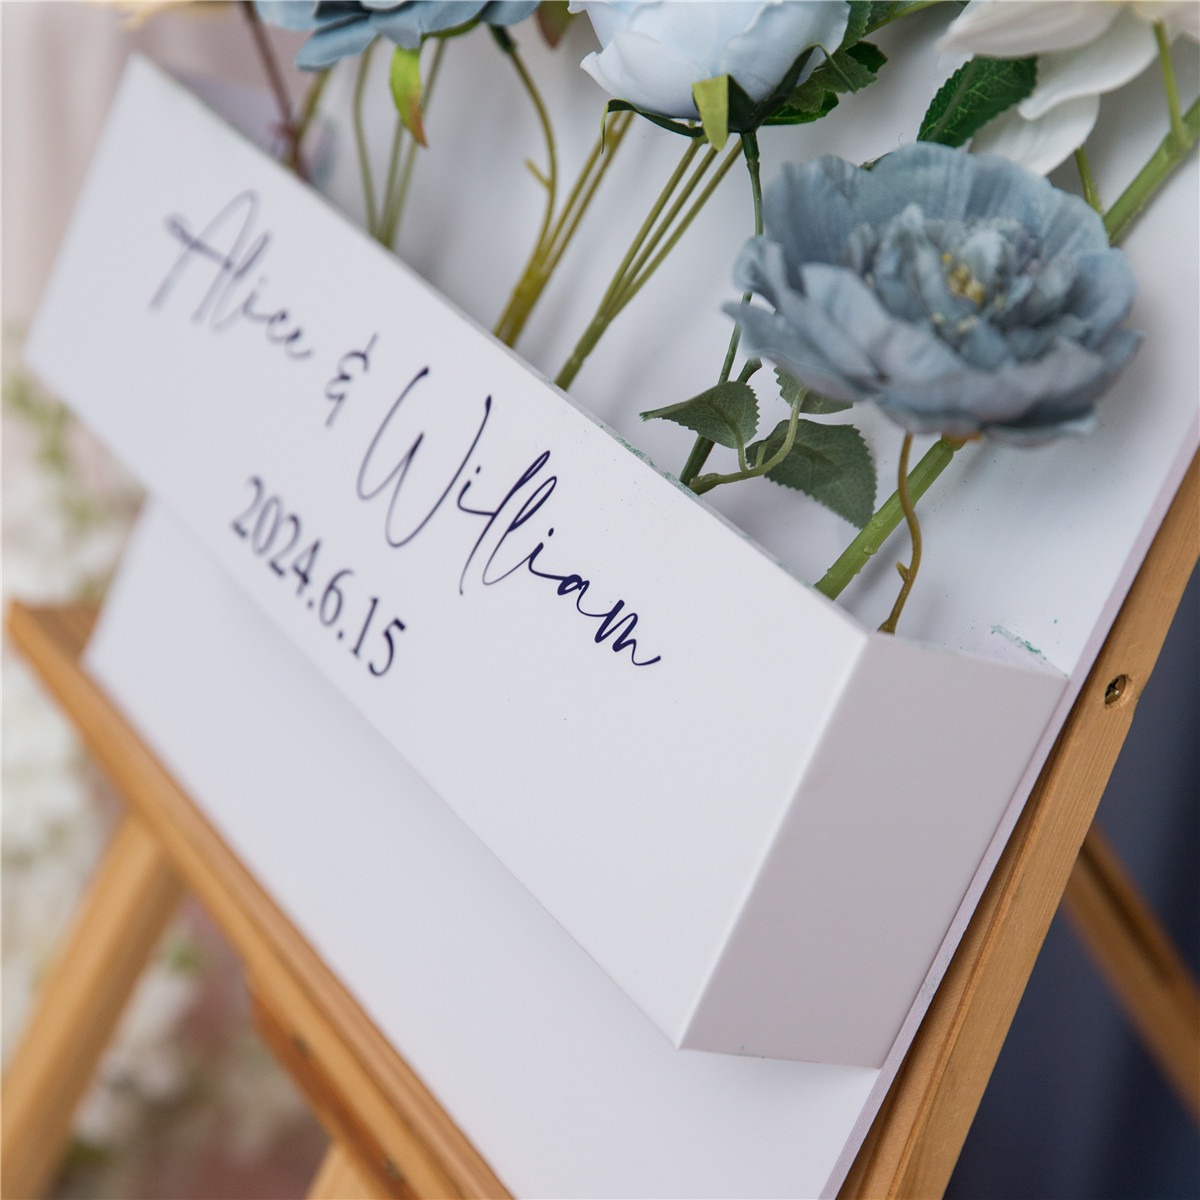 3mm Cartelli Plexiglass tableau di mariage con fiori YK071 - Clicca l'immagine per chiudere